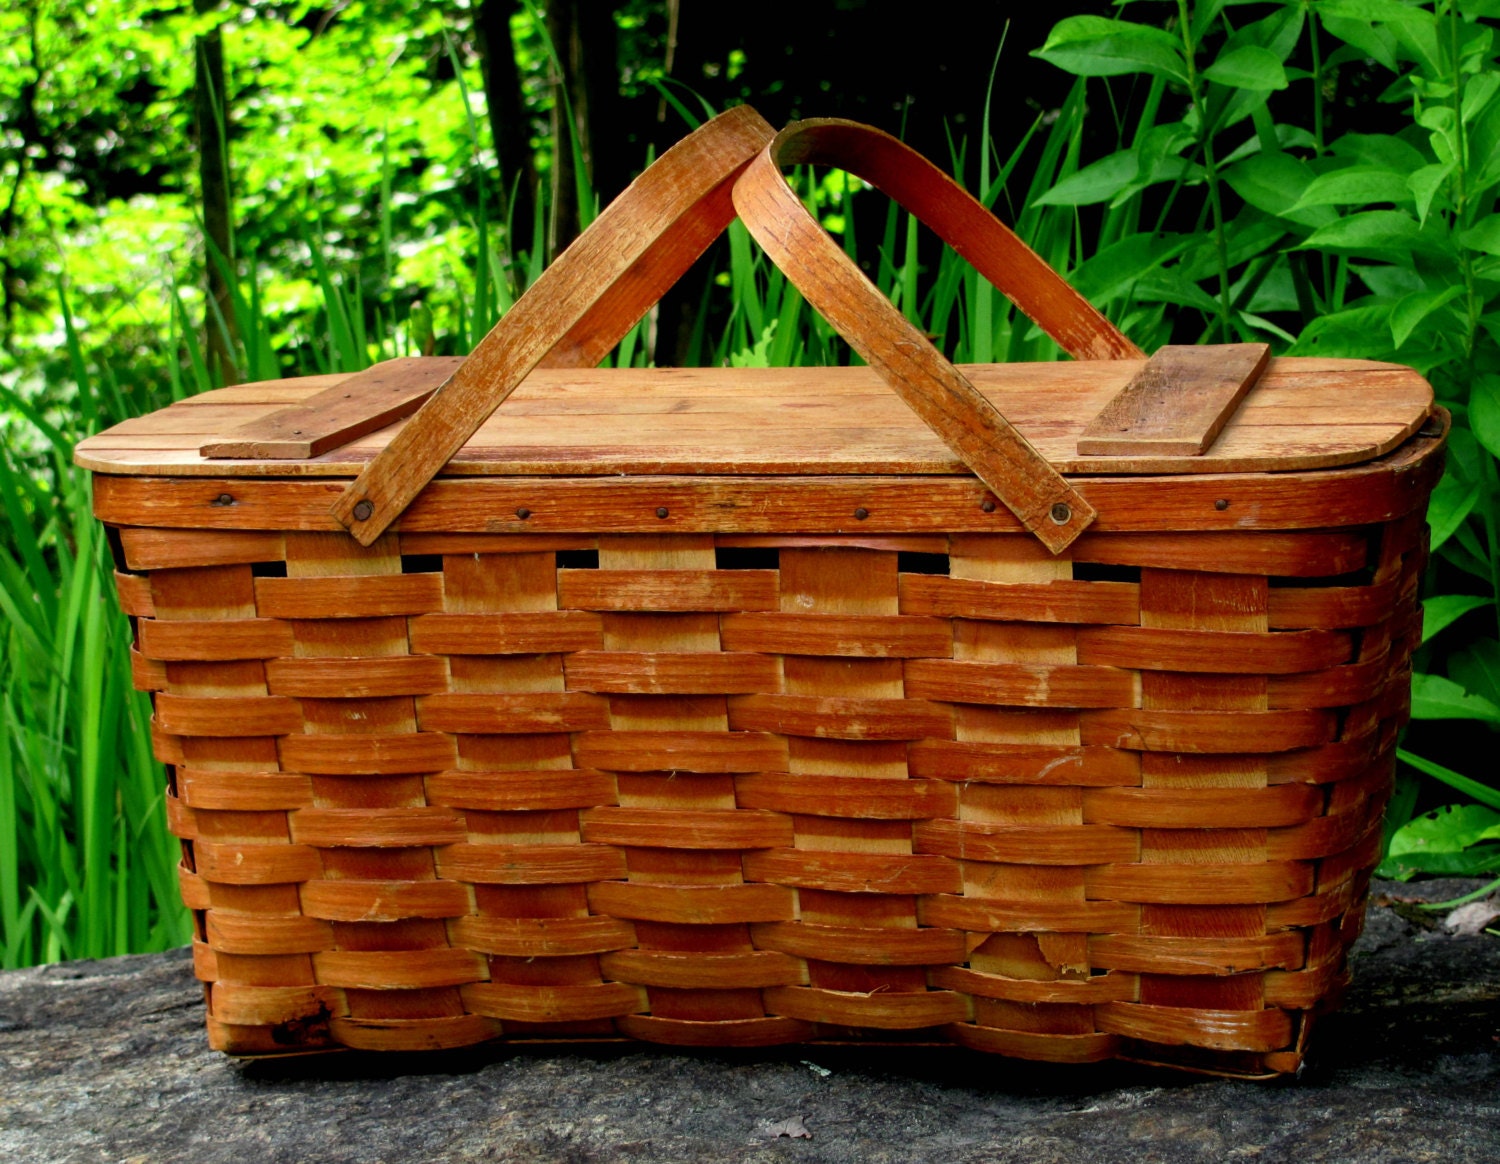 Picnic Basket Jerywil Wov-N-Wood by DaisysRetro on Etsy